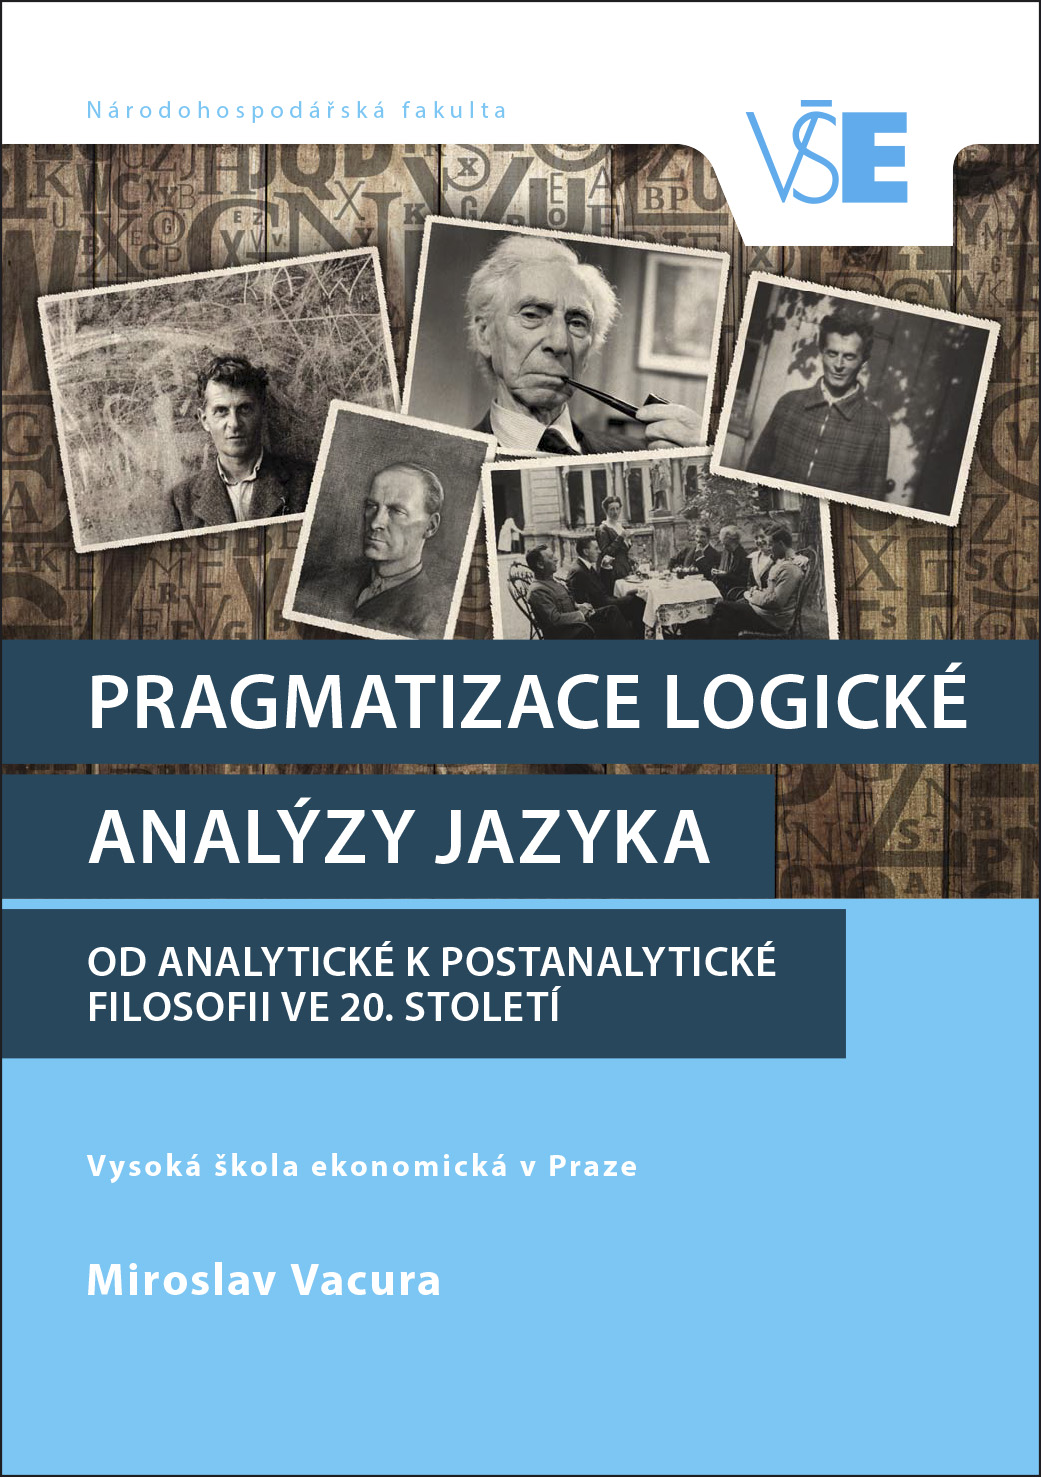 Pragmatizace logické analýzy jazyka - Od analytické k postanalytické filosofii ve 20. století